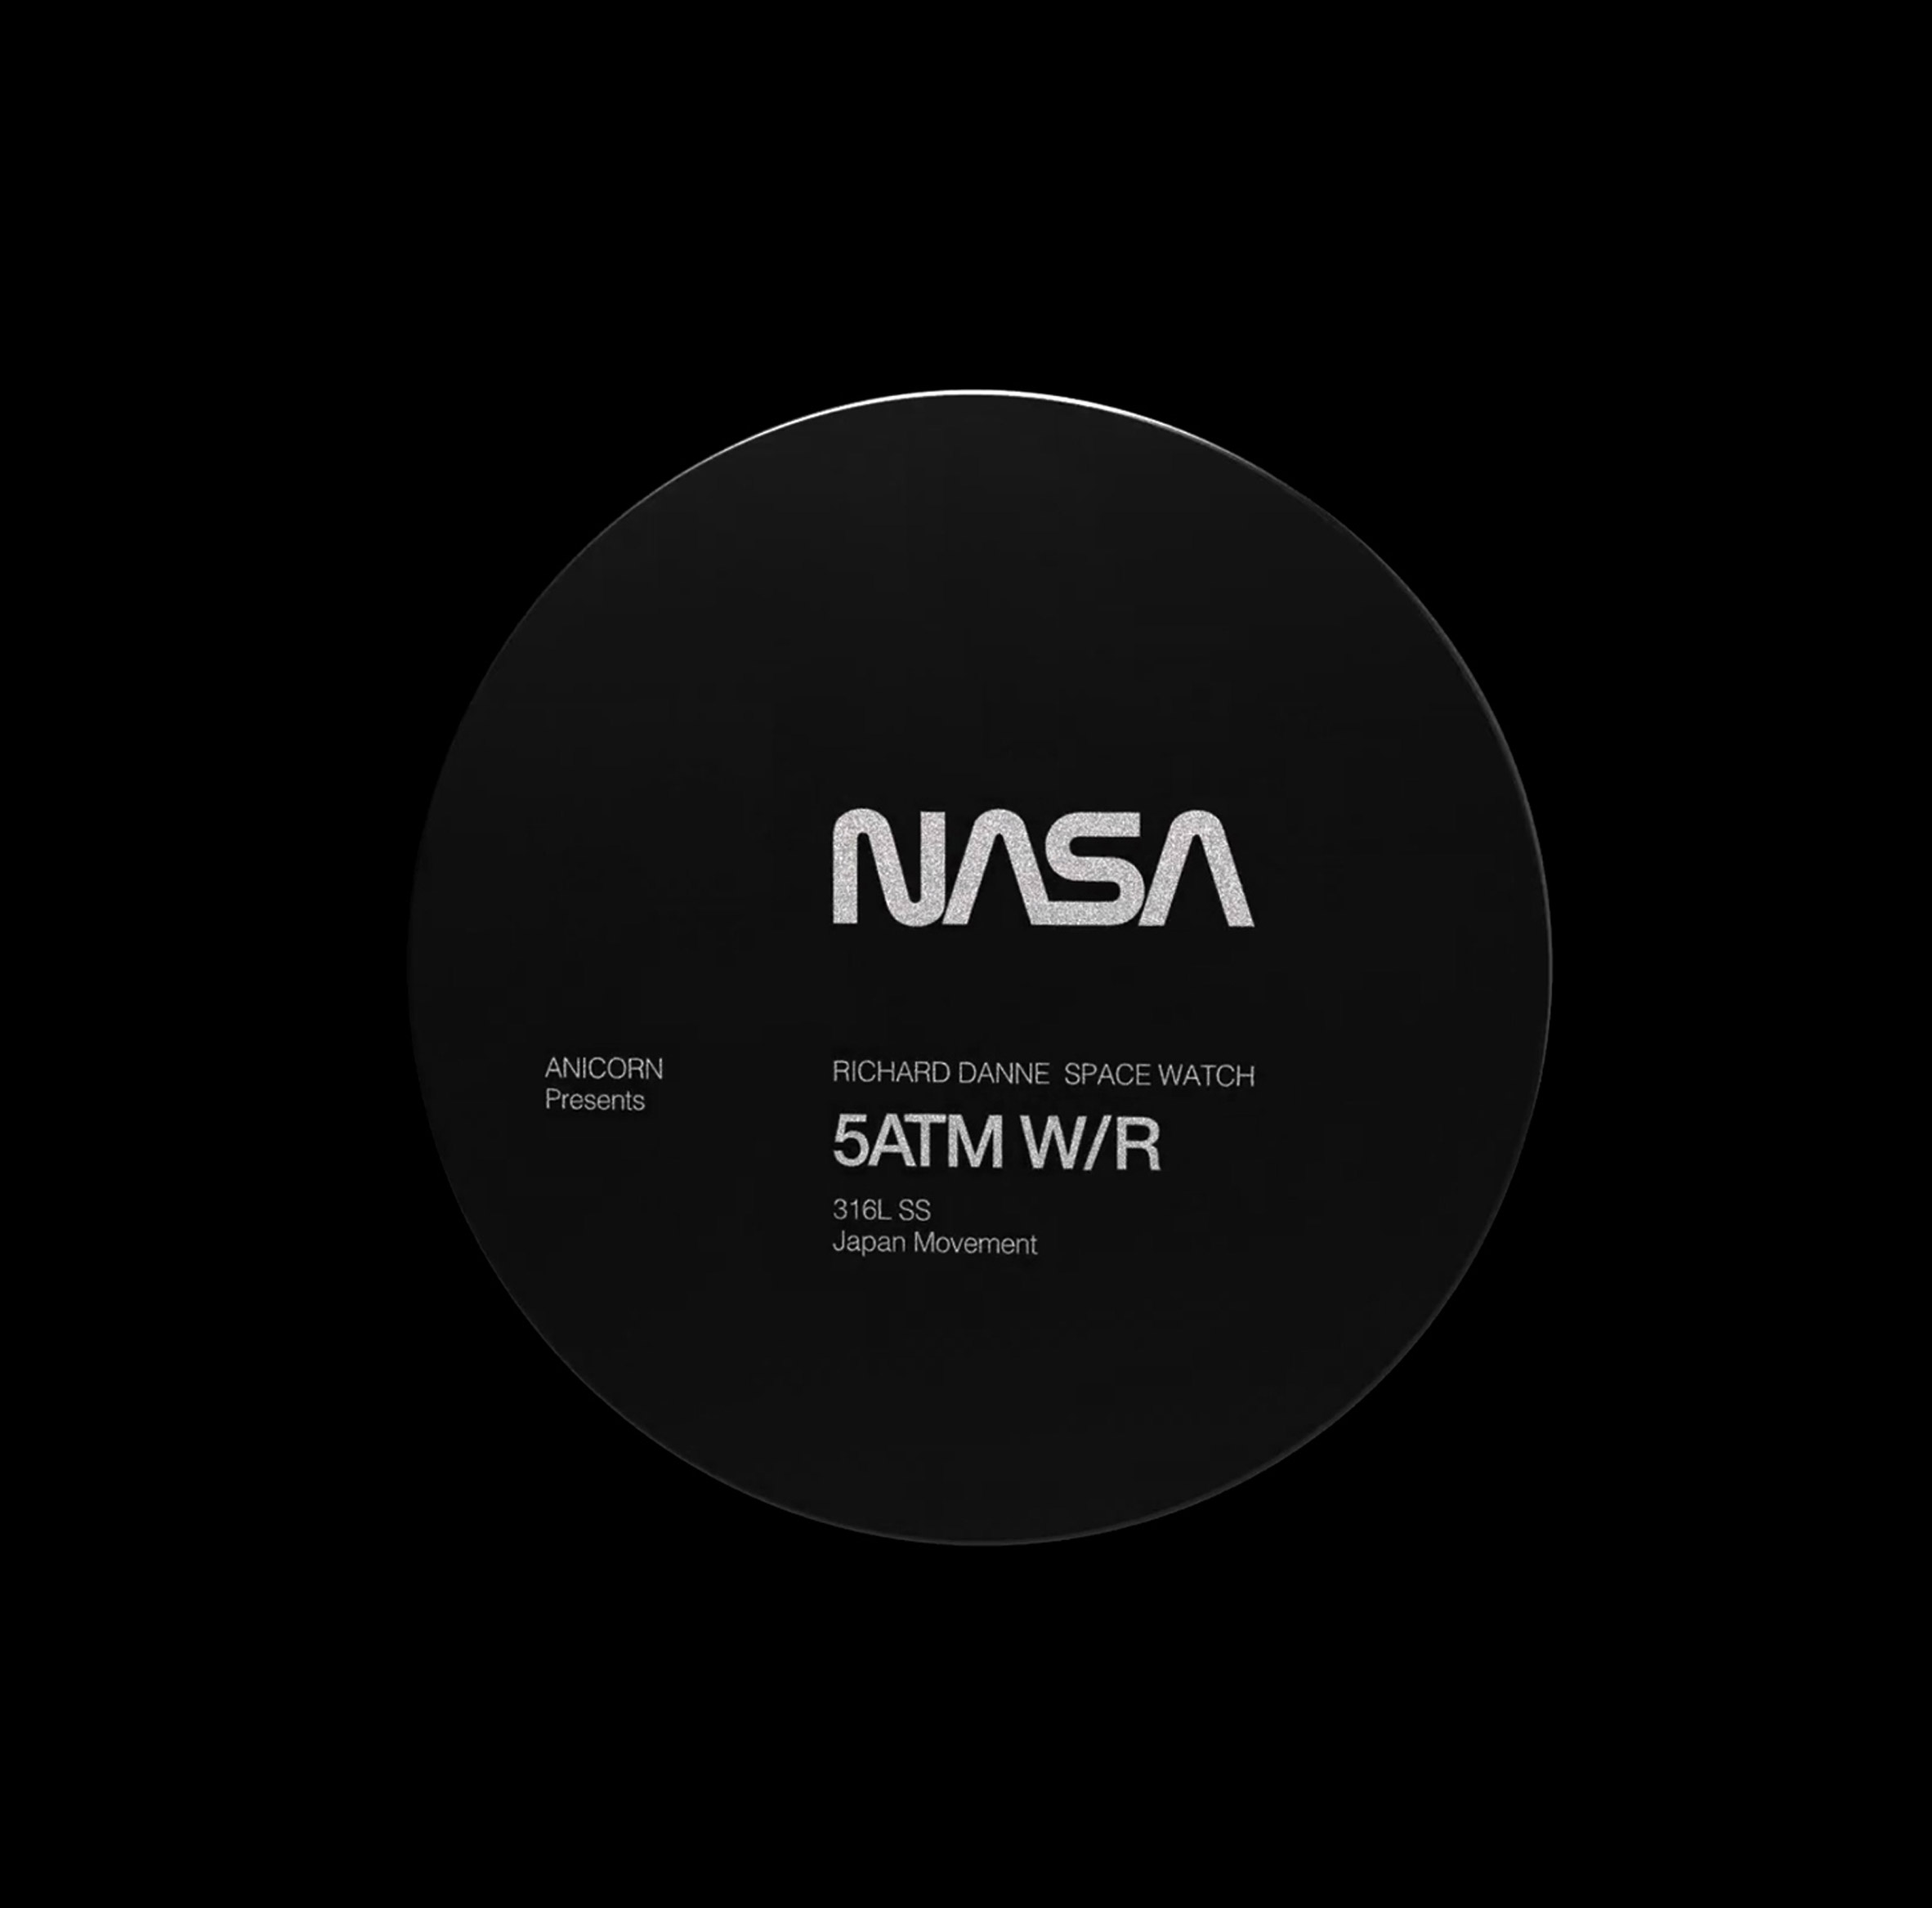 The artwork is features a circular NASA disc